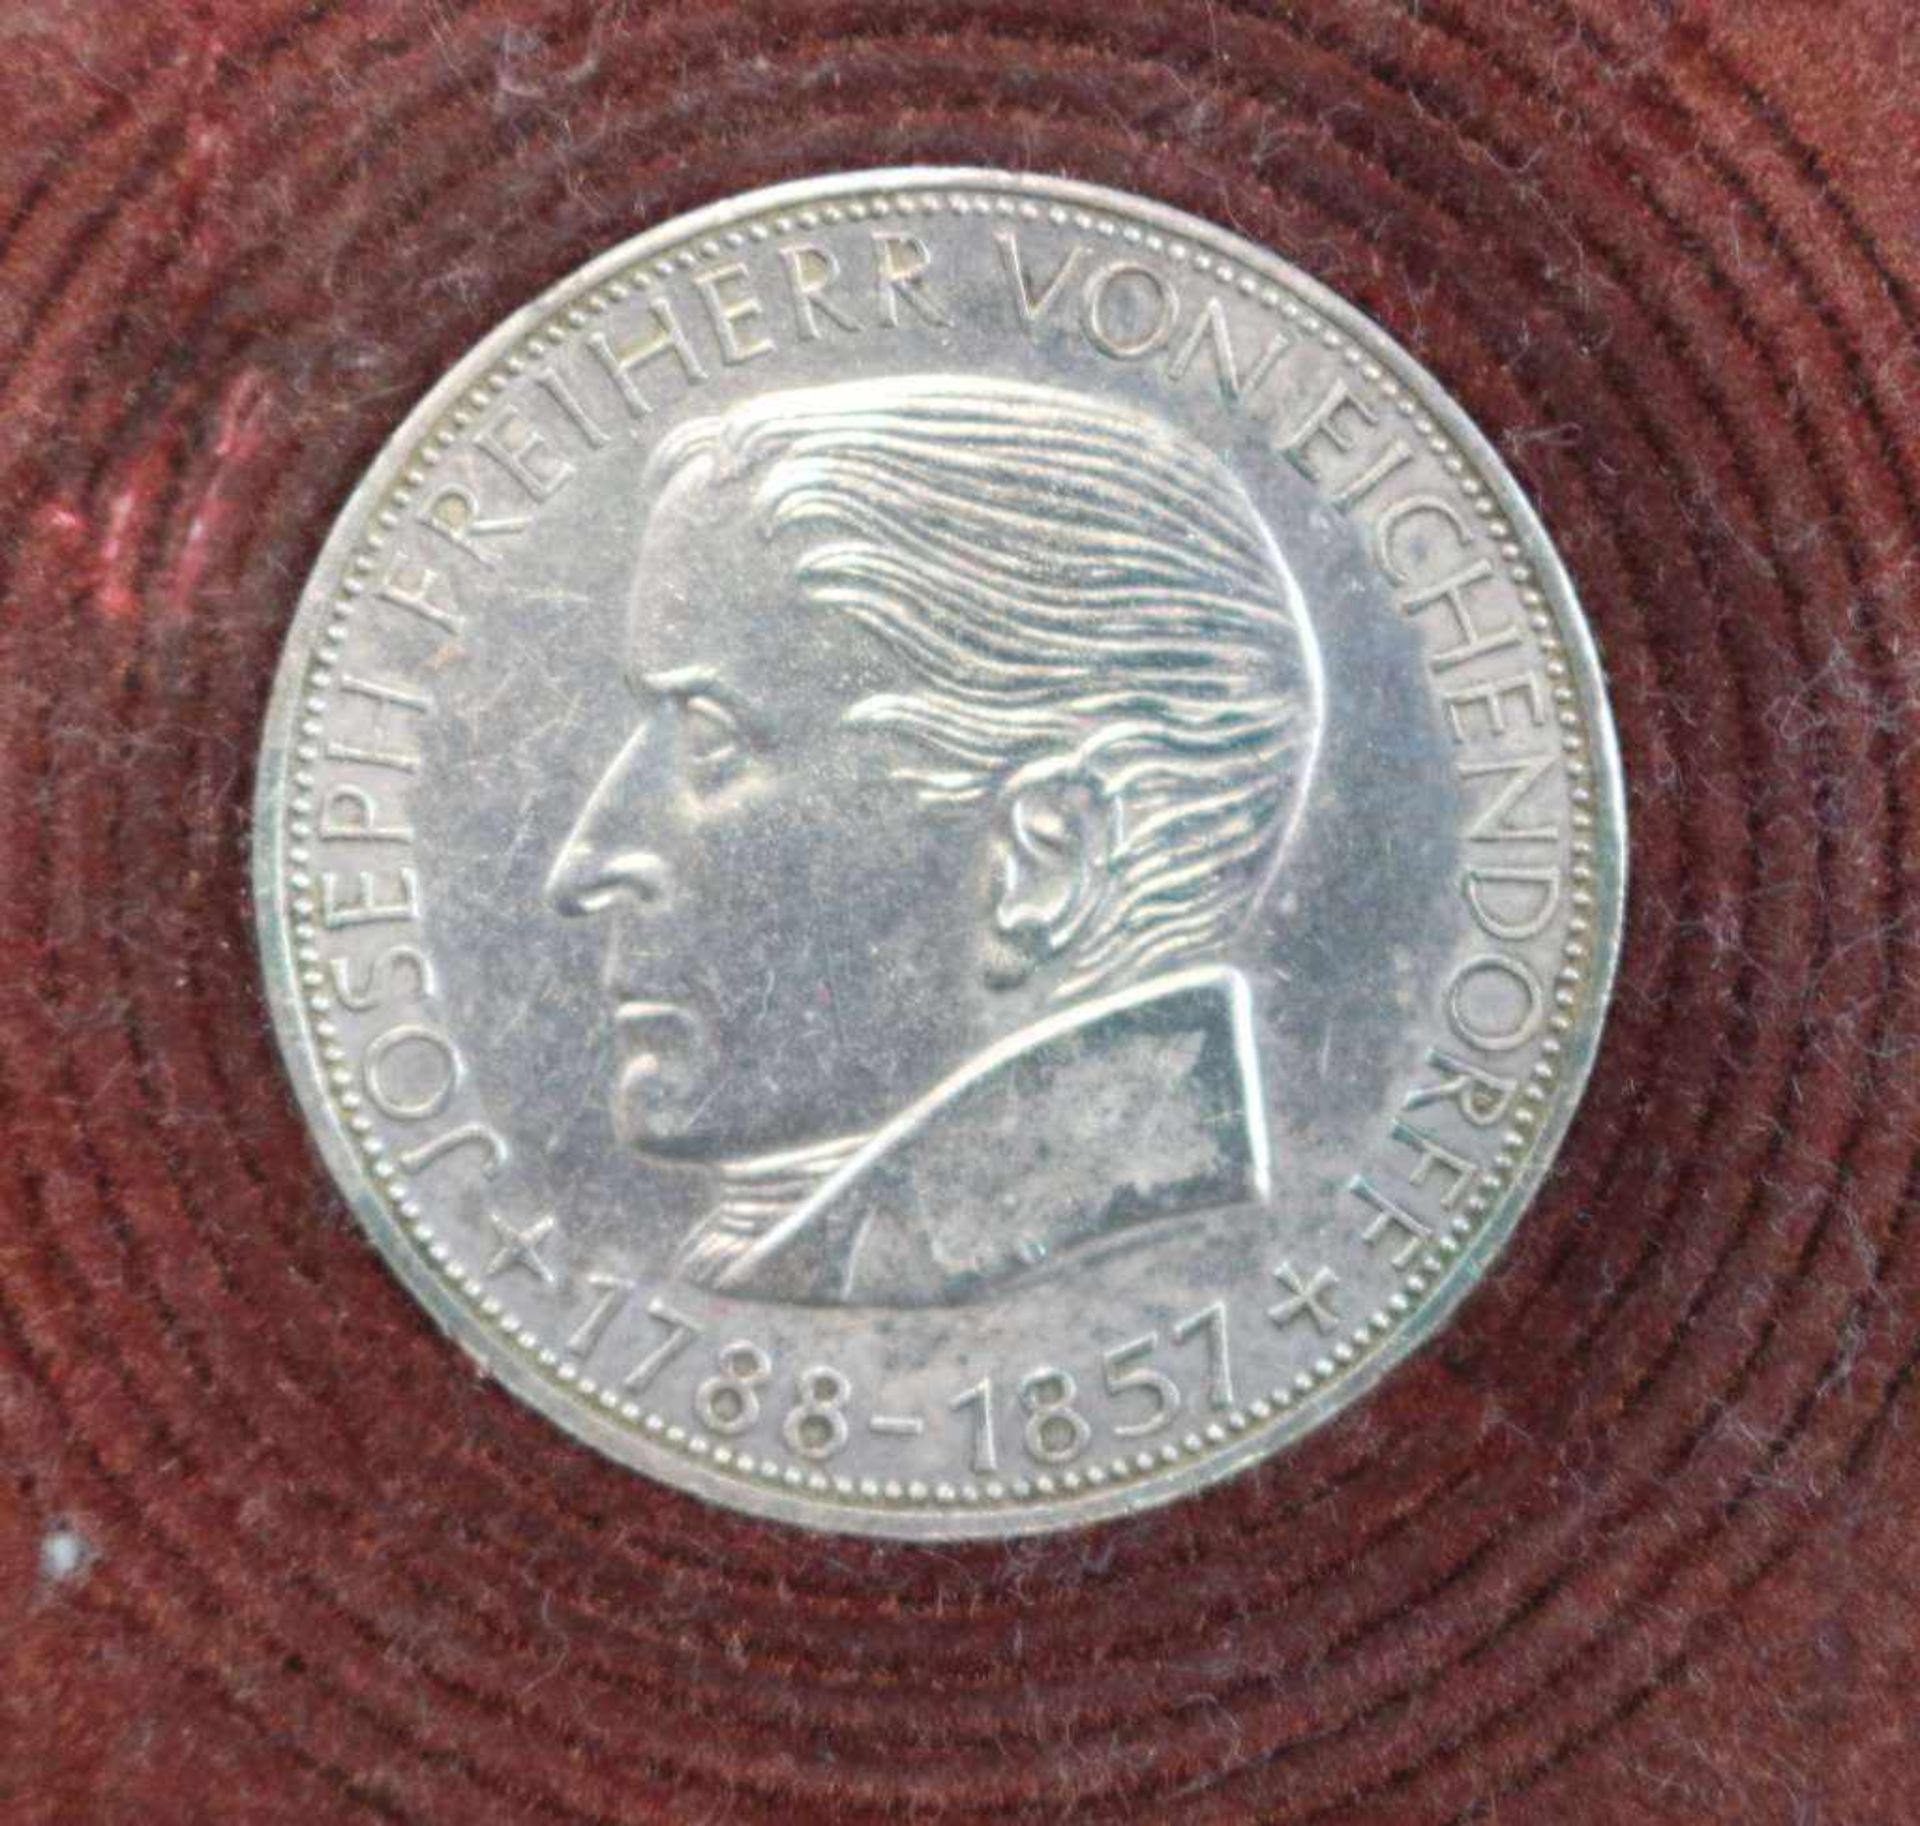 Gedenkmünze 5 Deutsche Mark 1957, zum 100. Todestag von Joseph Freiherr von Eichendorff. Silber (